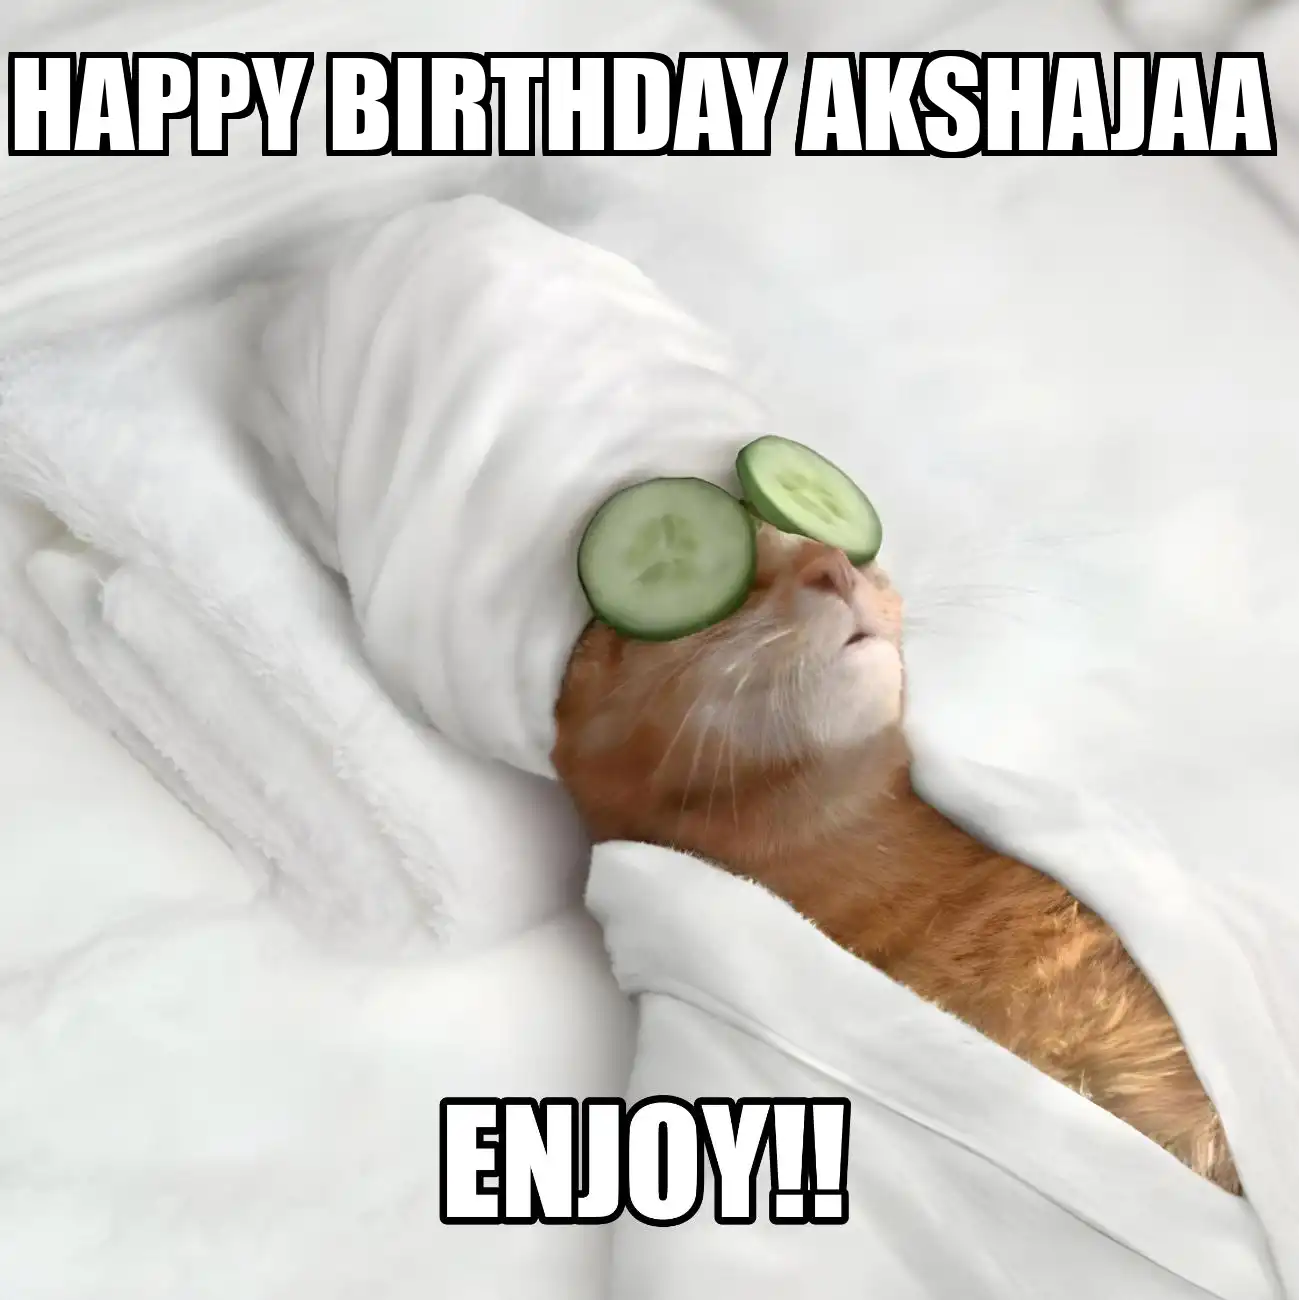 Happy Birthday Akshajaa Enjoy Cat Meme